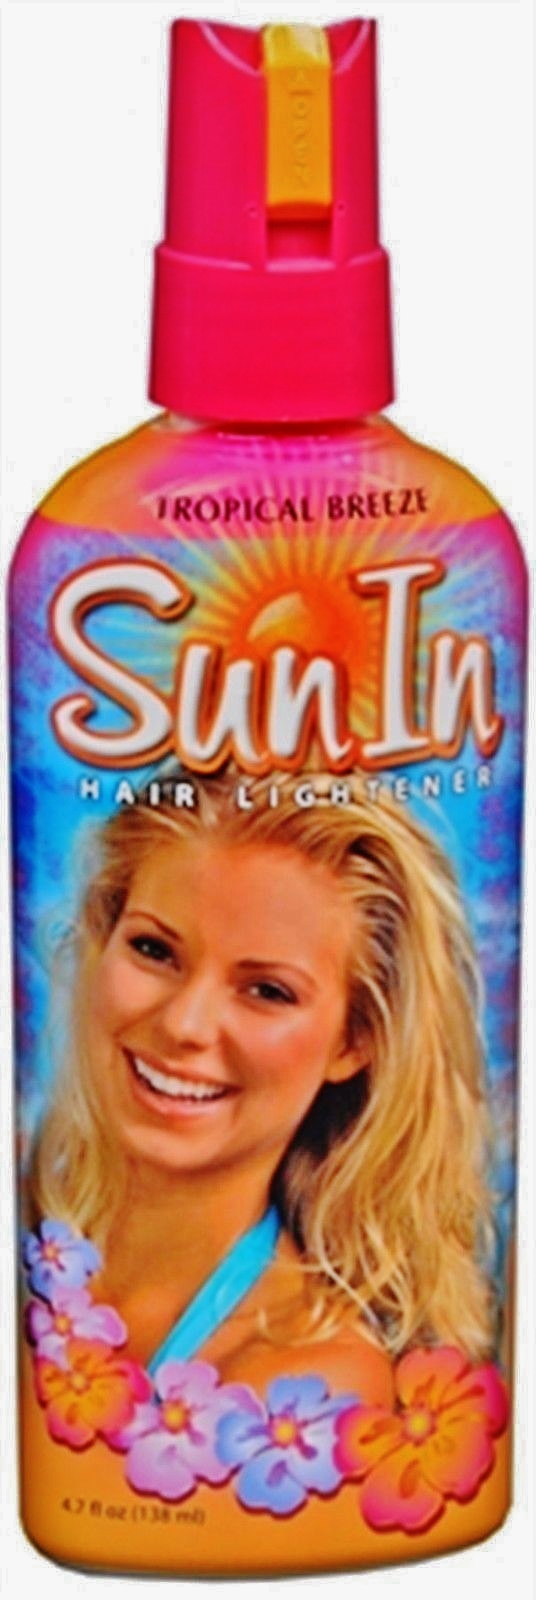 Sun-In Hair Lightener Spray, Tropical Breeze 4.7 oz